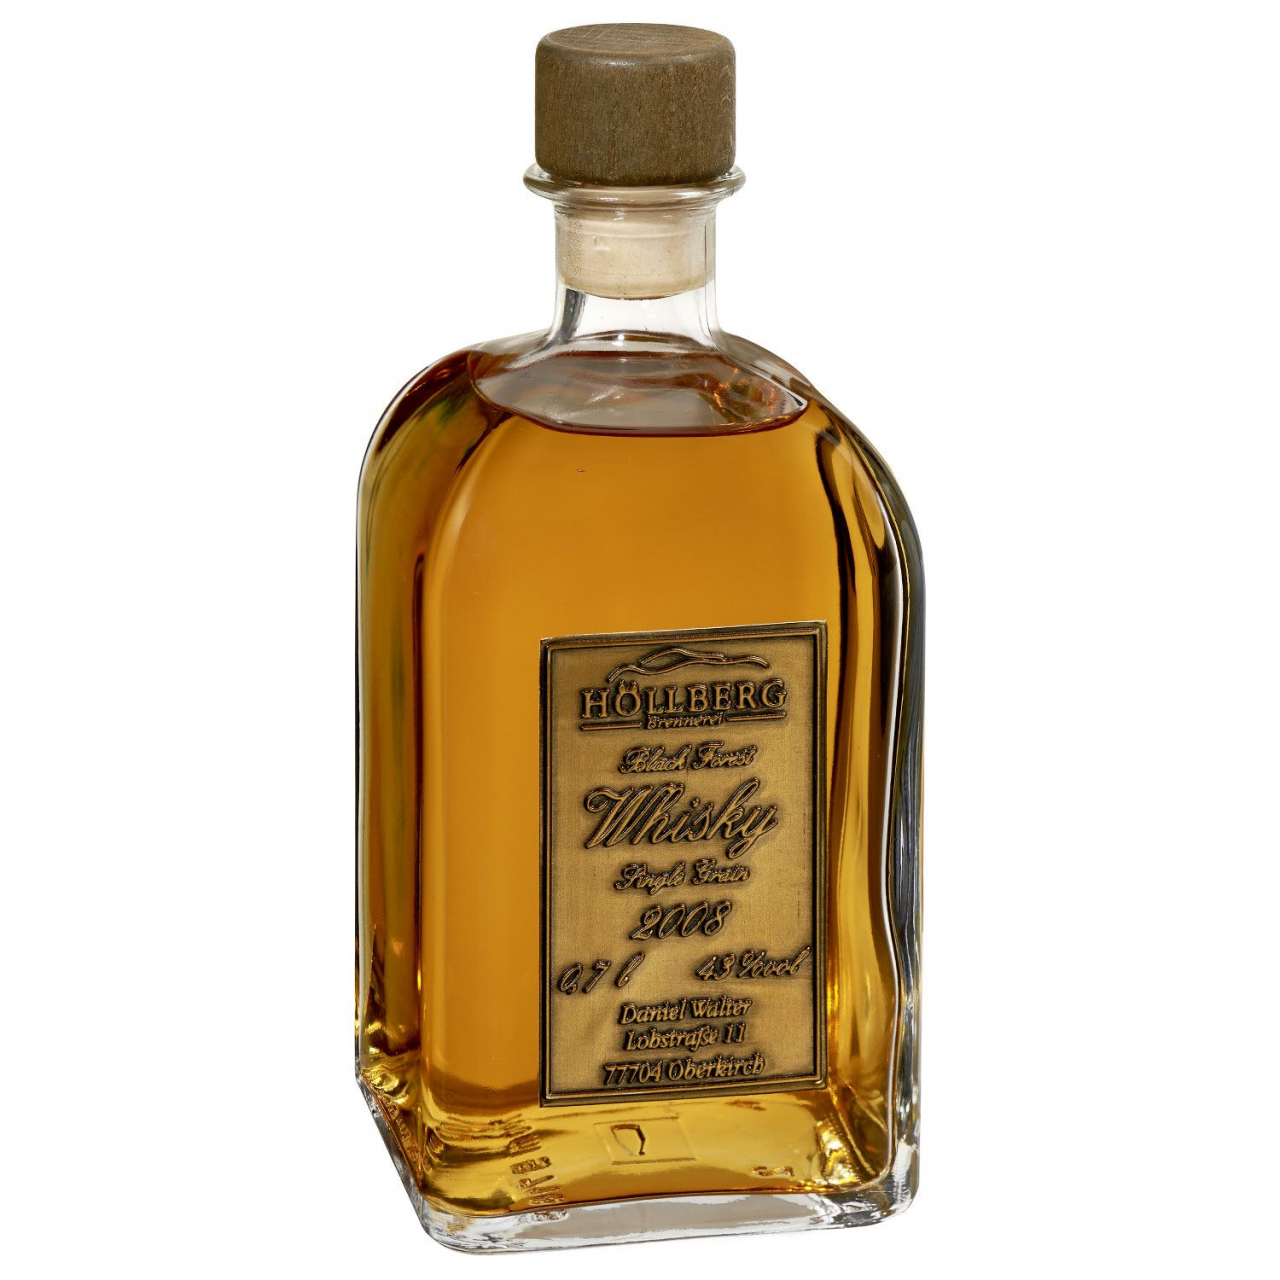 Black Forest Whisky 43% vol. Jahrgang 2012